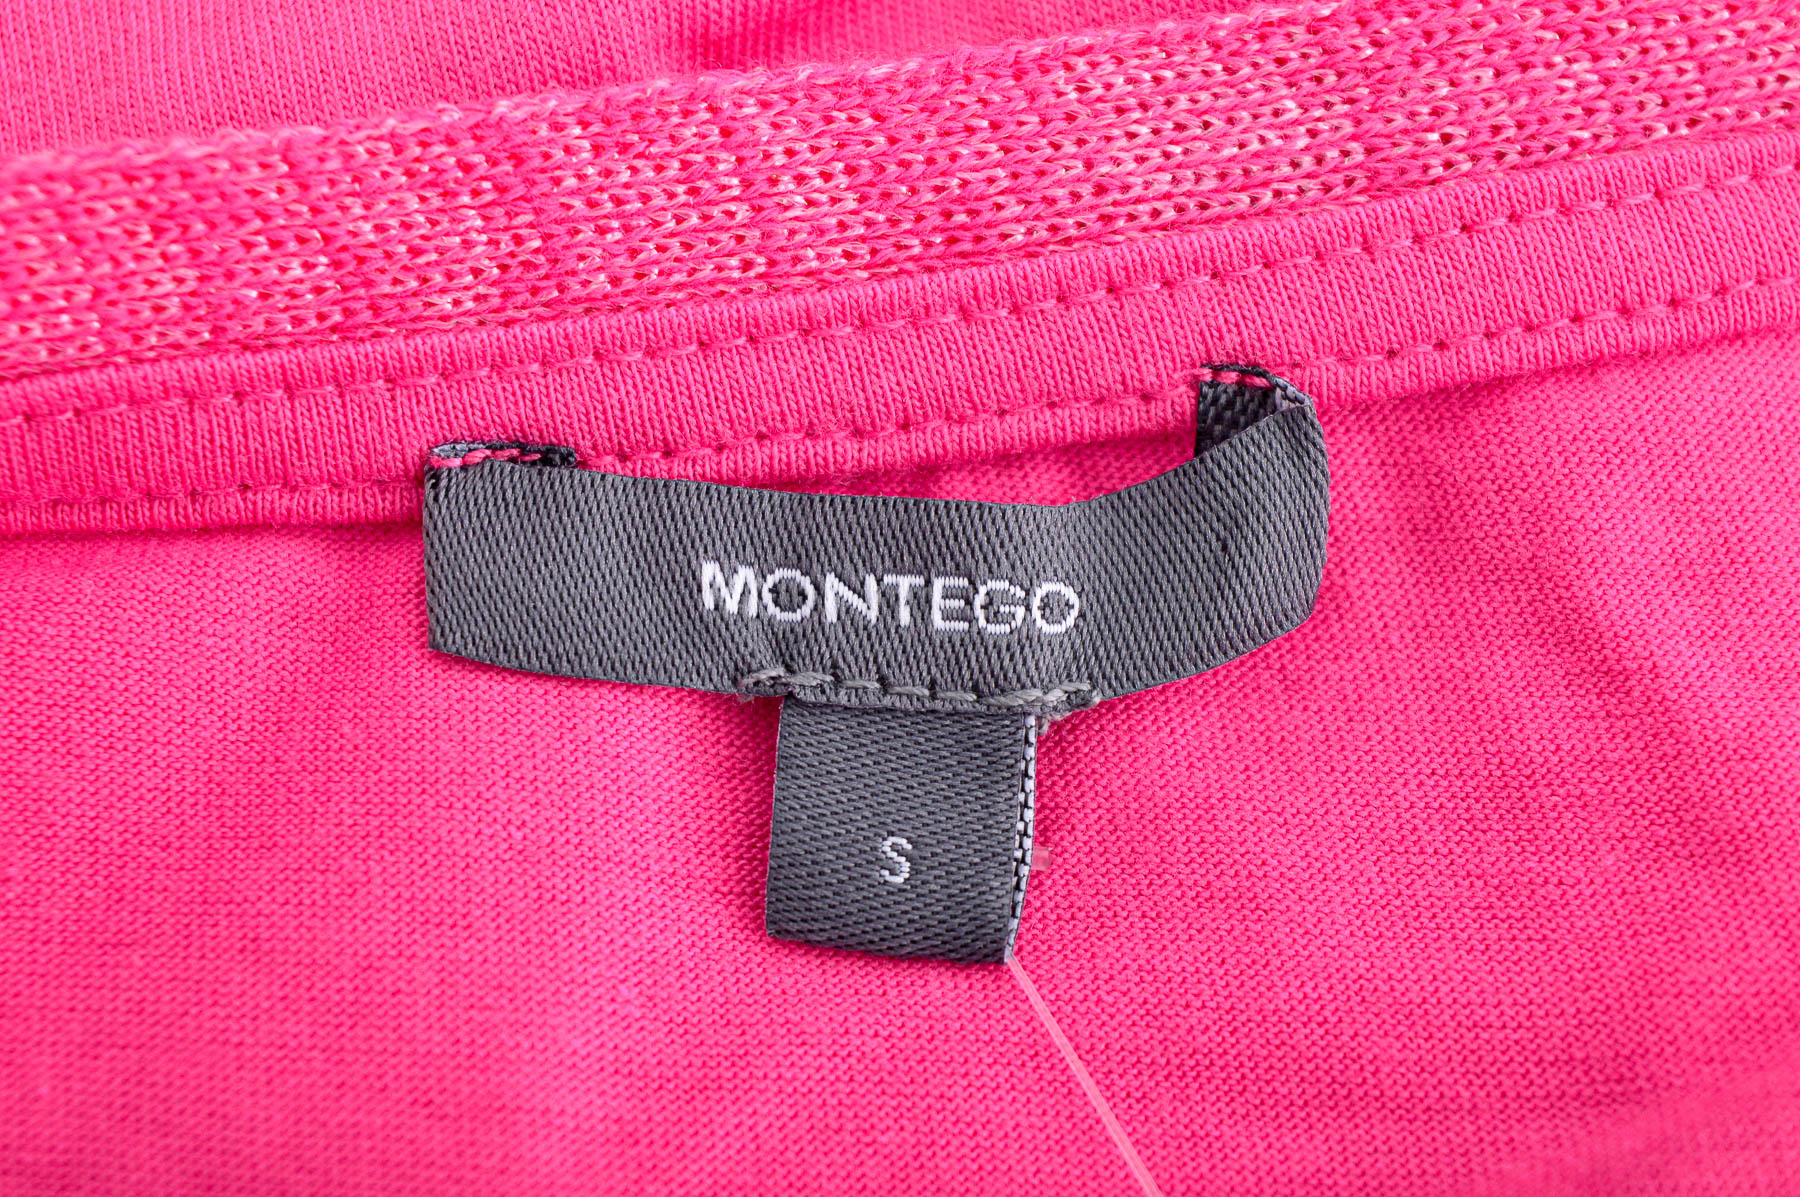 Women's t-shirt - MONTEGO - 2